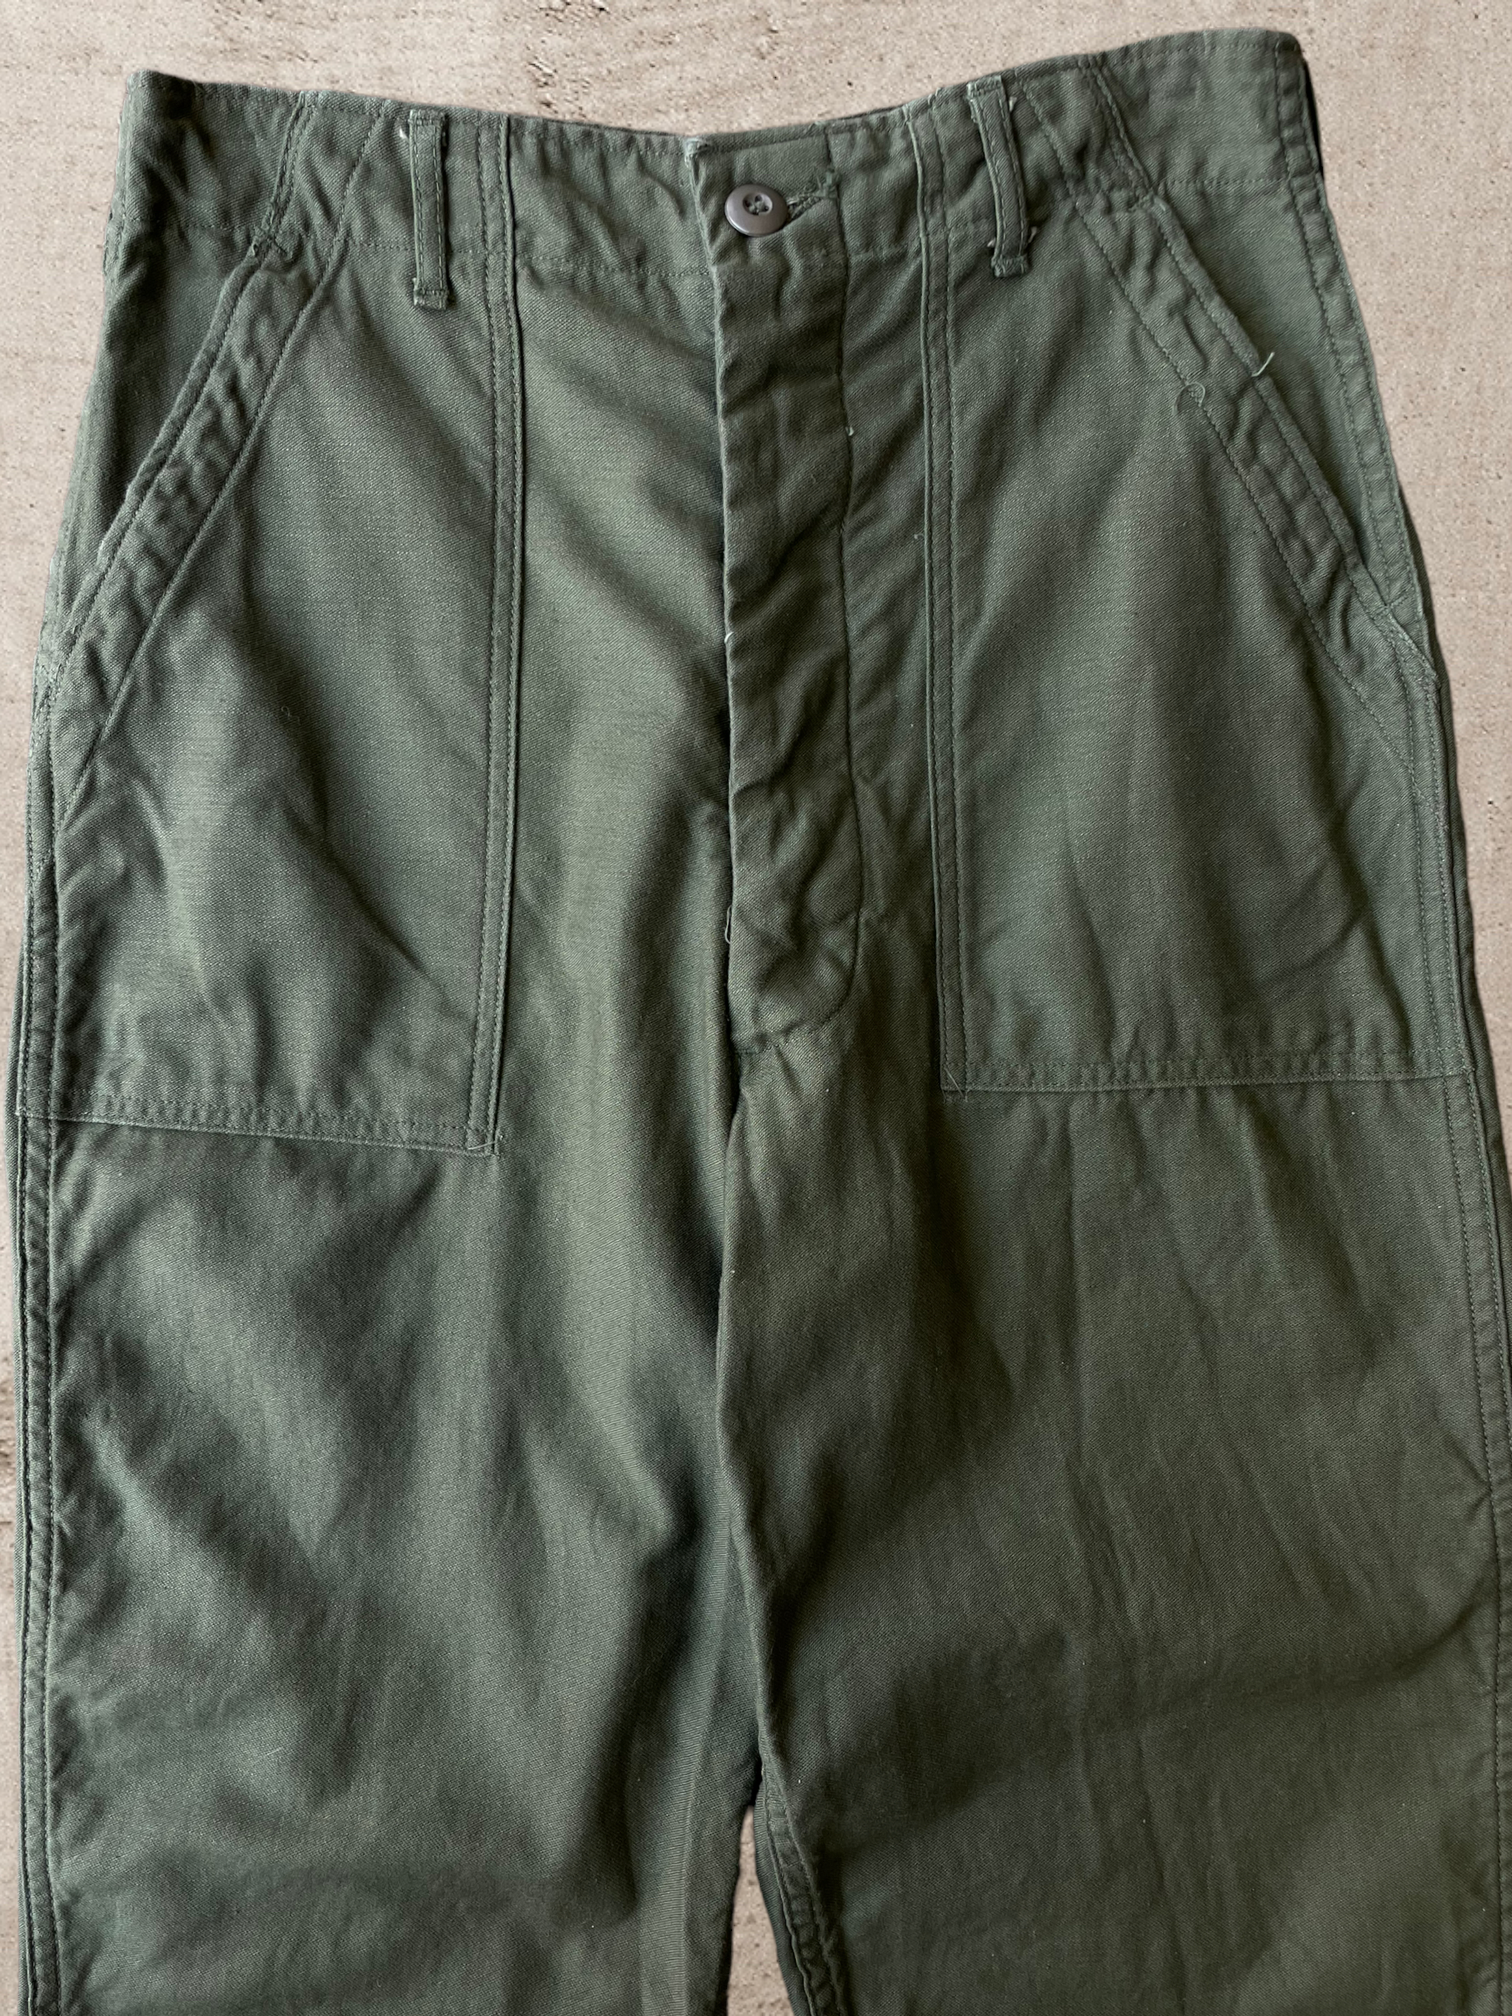 70s/80s Military OG 107 Fatigue Pants - 30x30